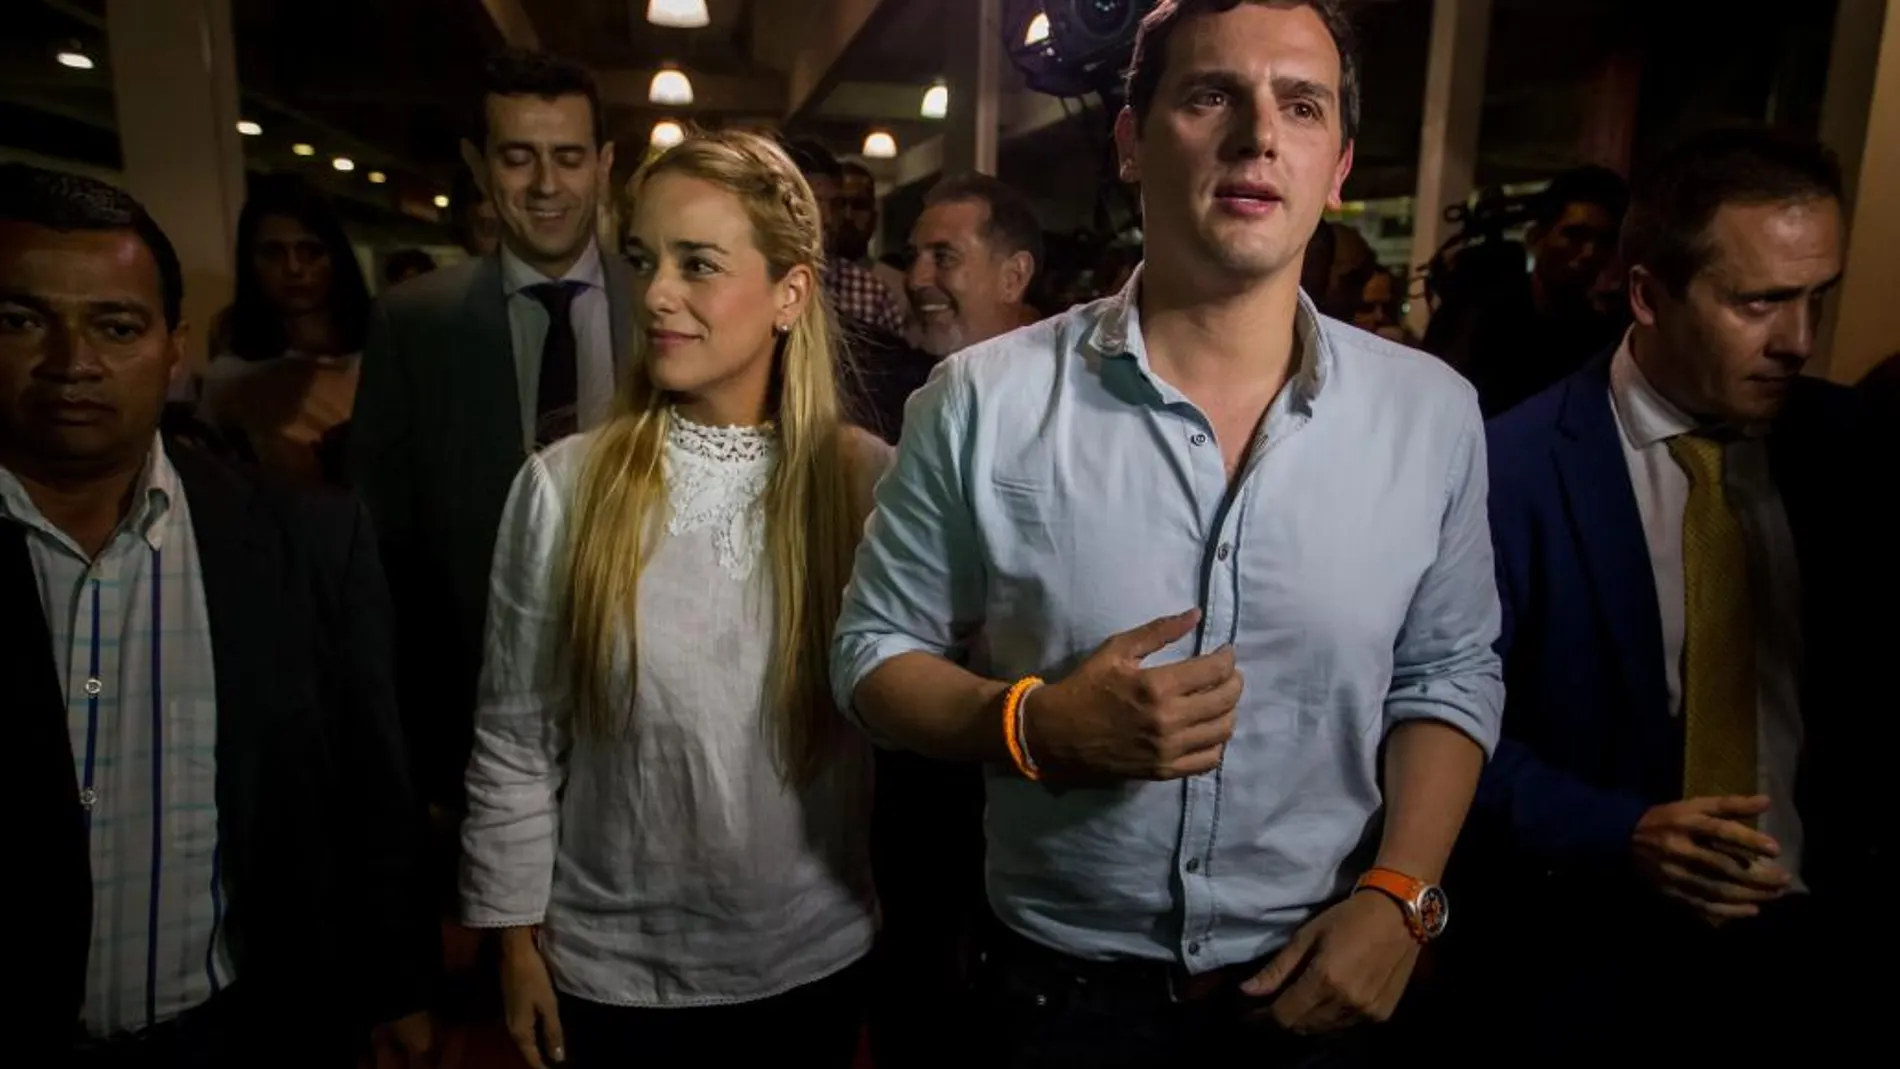 El líder del partido español Ciudadanos (oposición) Albert Rivera (2i) fue recibido por la esposa del preso político venezolano Leopoldo Lopez, Lilian Tintori (c) a su llegada